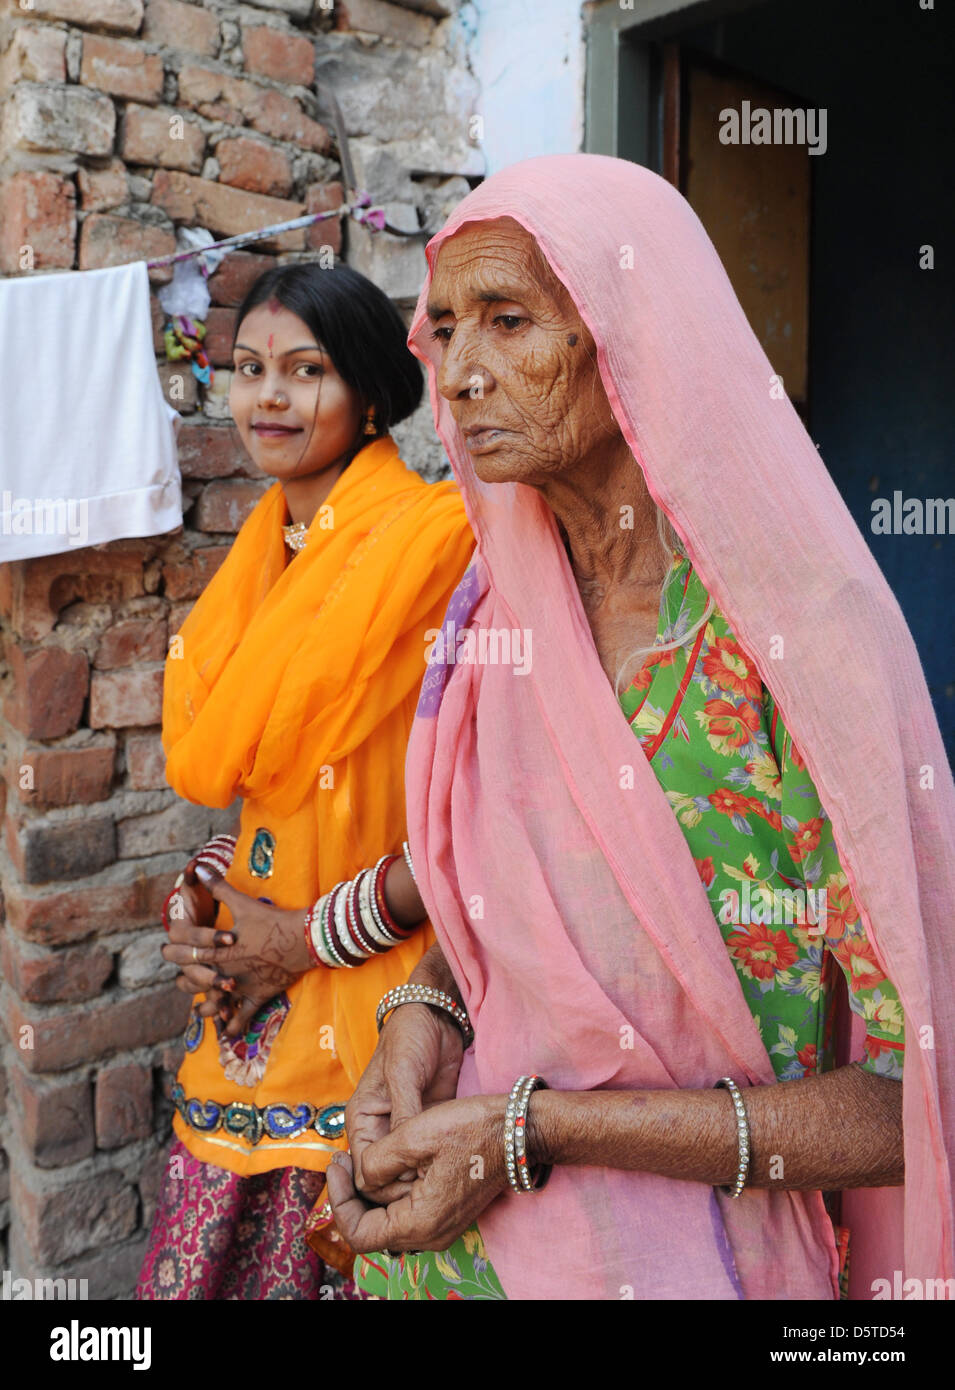 76-year-old Suraj Devi et sa fille Preenka sont illustrés dans la cour de leur maison dans un quartier pauvre de Jaipur, Inde, 15 novembre 2012. Suraj Devi ont reçu de l'argent du Village d'Enfants SOS de Jaipur pour un stand à l'appui de sa famille de trois enfants. En ce moment, les Villages d'Enfants SOS 99 cas de soutien des familles, des femmes, ou des enfants à l'extérieur de la Villa pour les enfants Banque D'Images